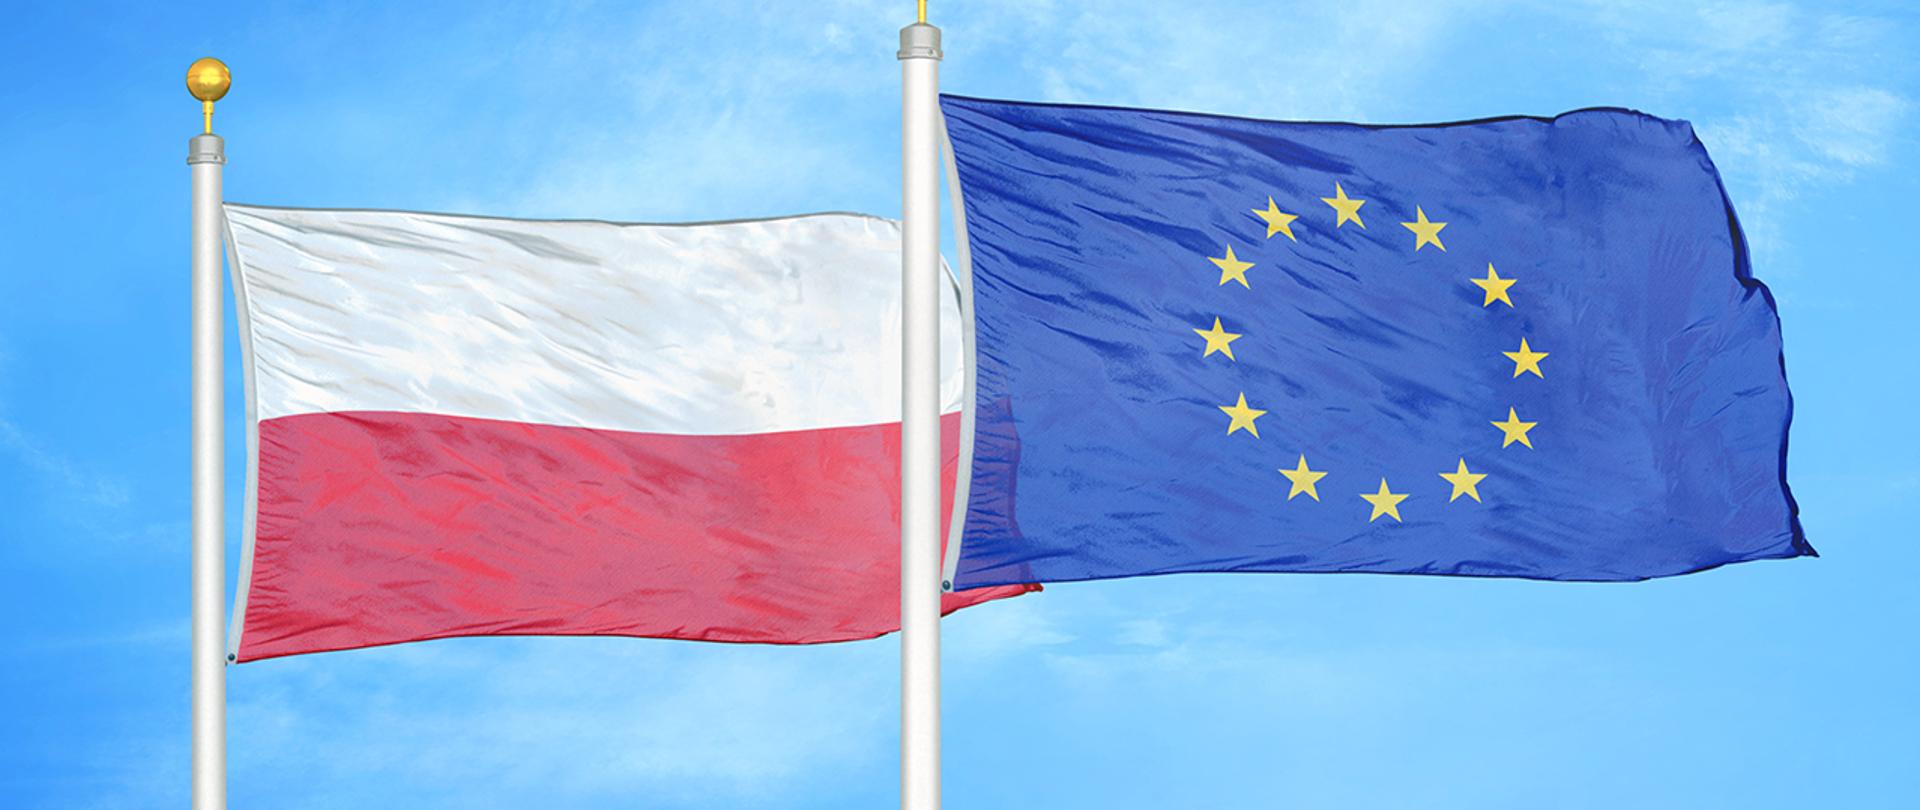 Flaga Polski i flaga Unii Europejskiej powiewające na masztach.